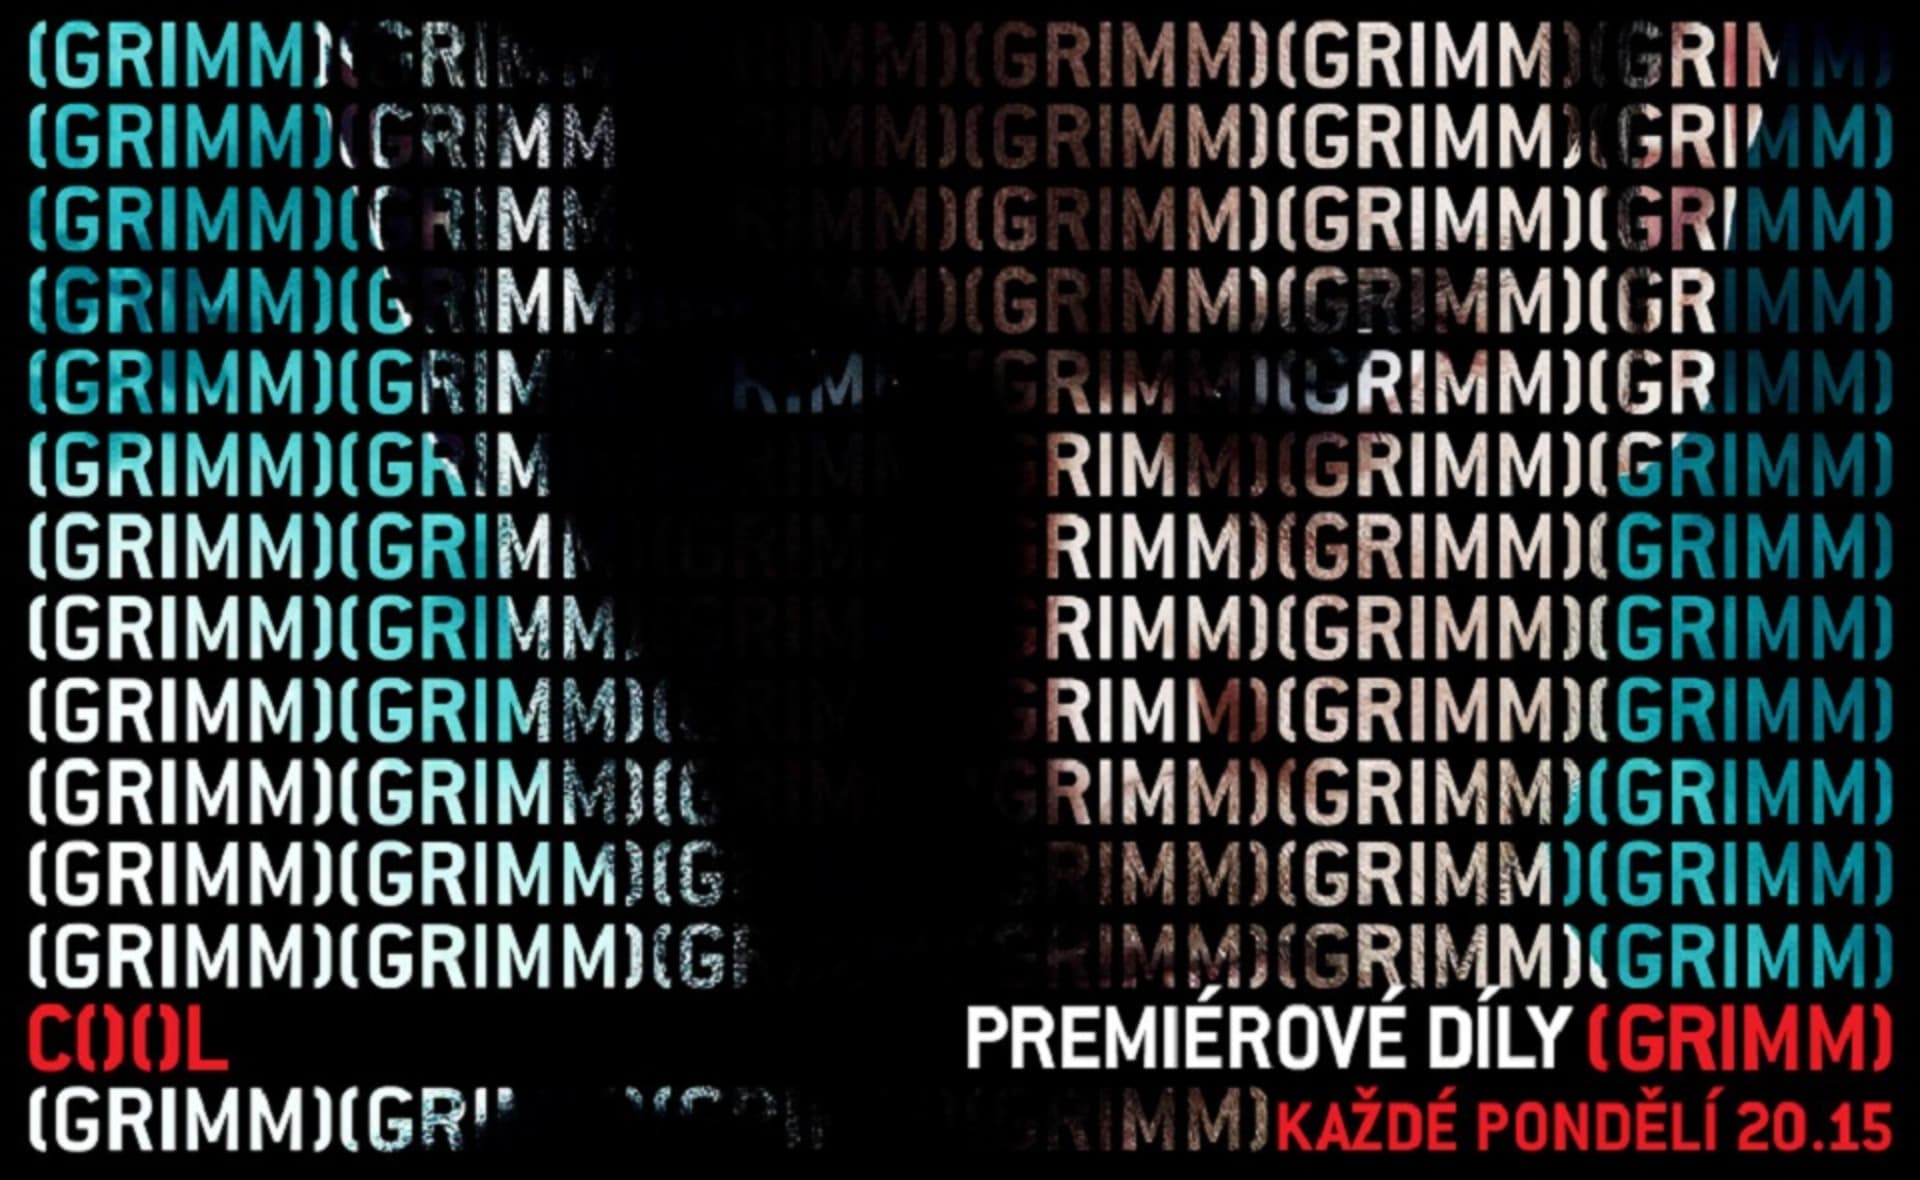 Grimm - premiérové díly